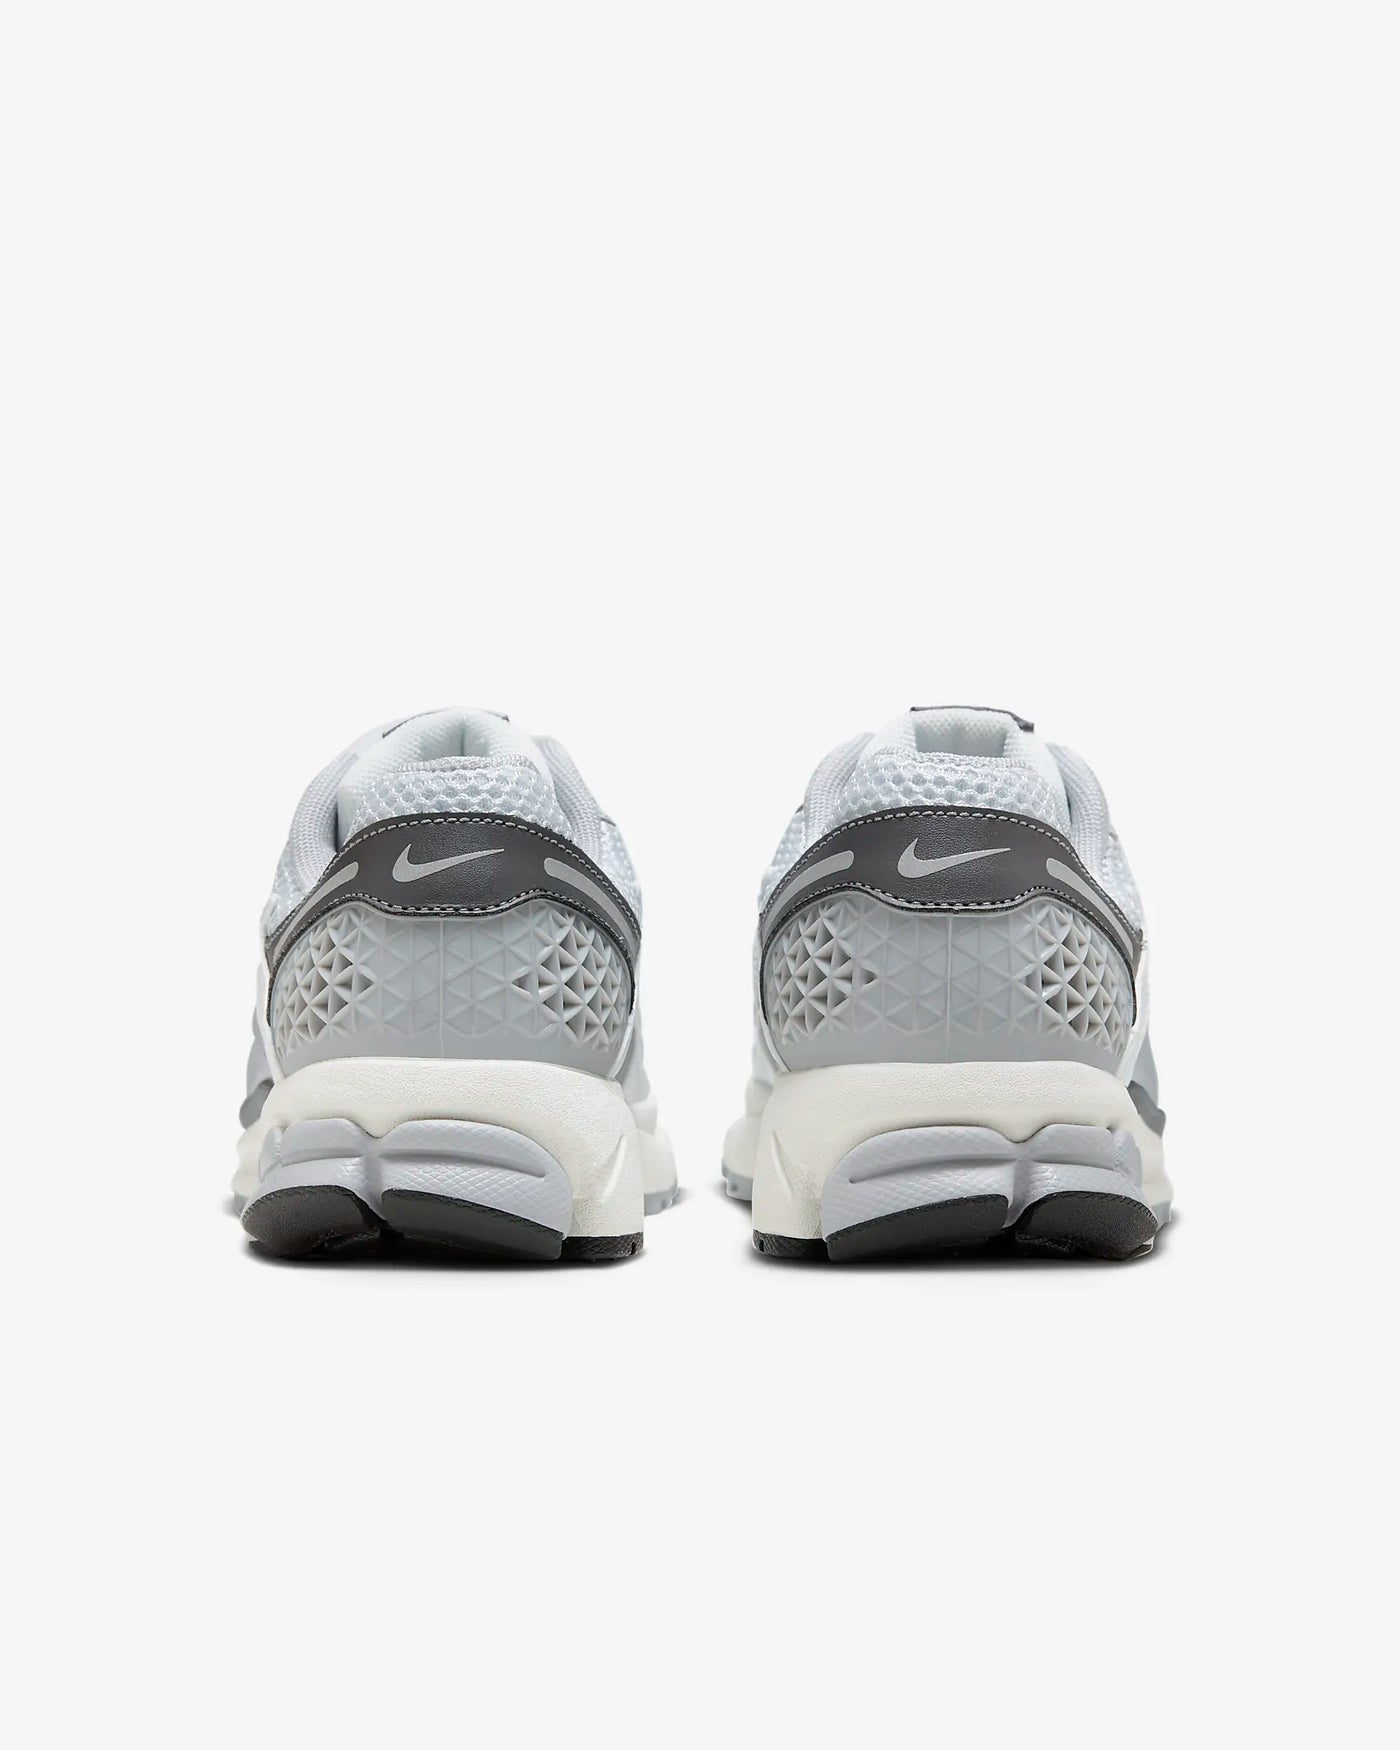 Nike Air Zoom Vomero 5 Shoes - - Men's Sneakers - Carvan Mart